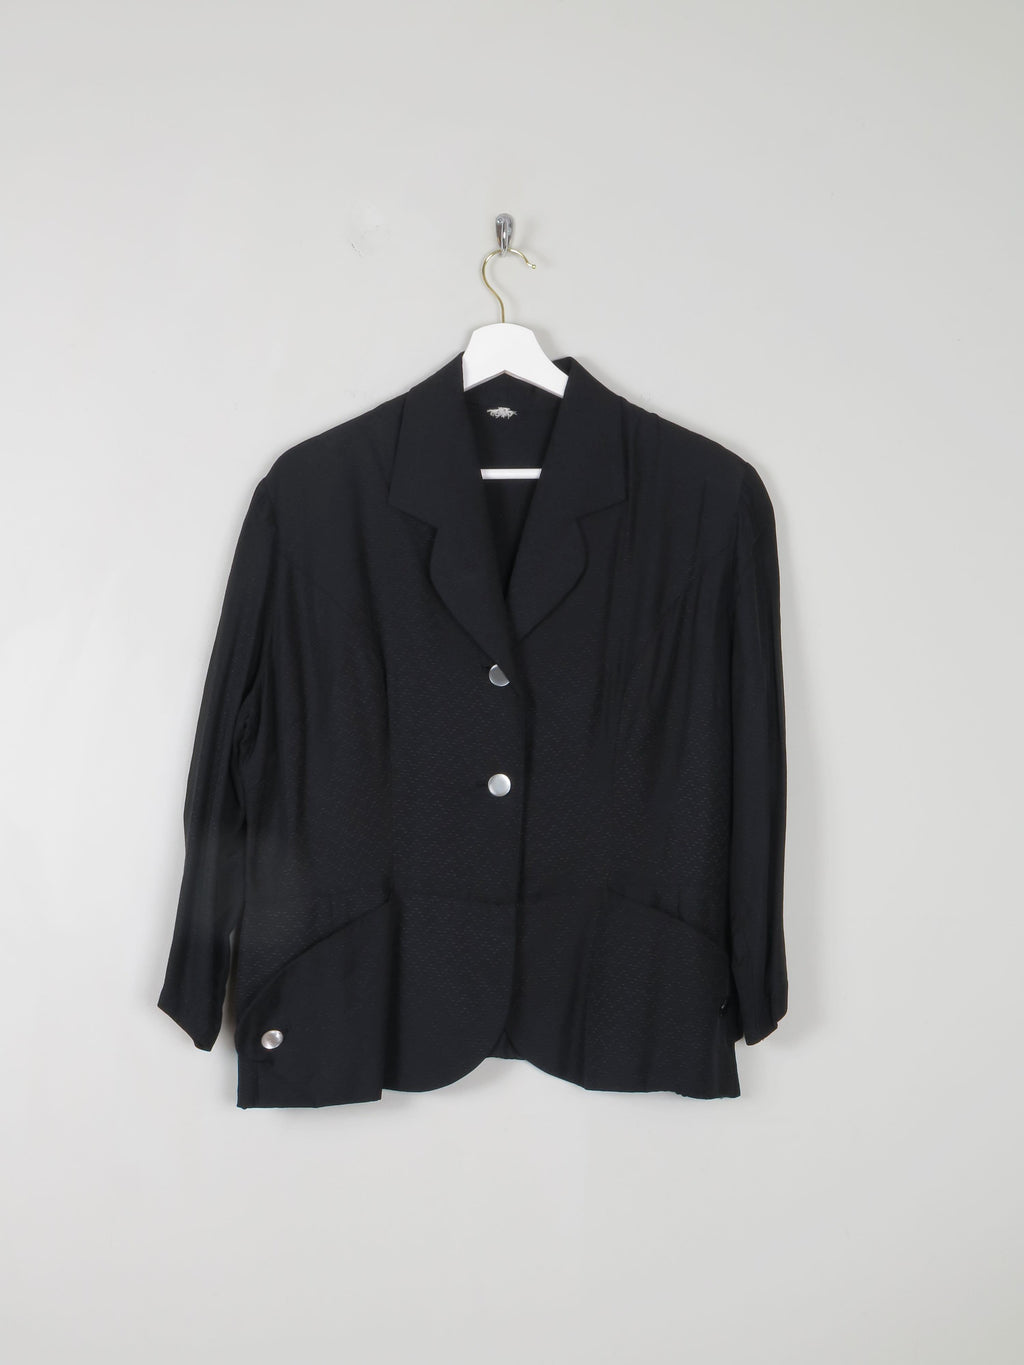 Women's Vintage Black Jacket 14 - The Harlequin